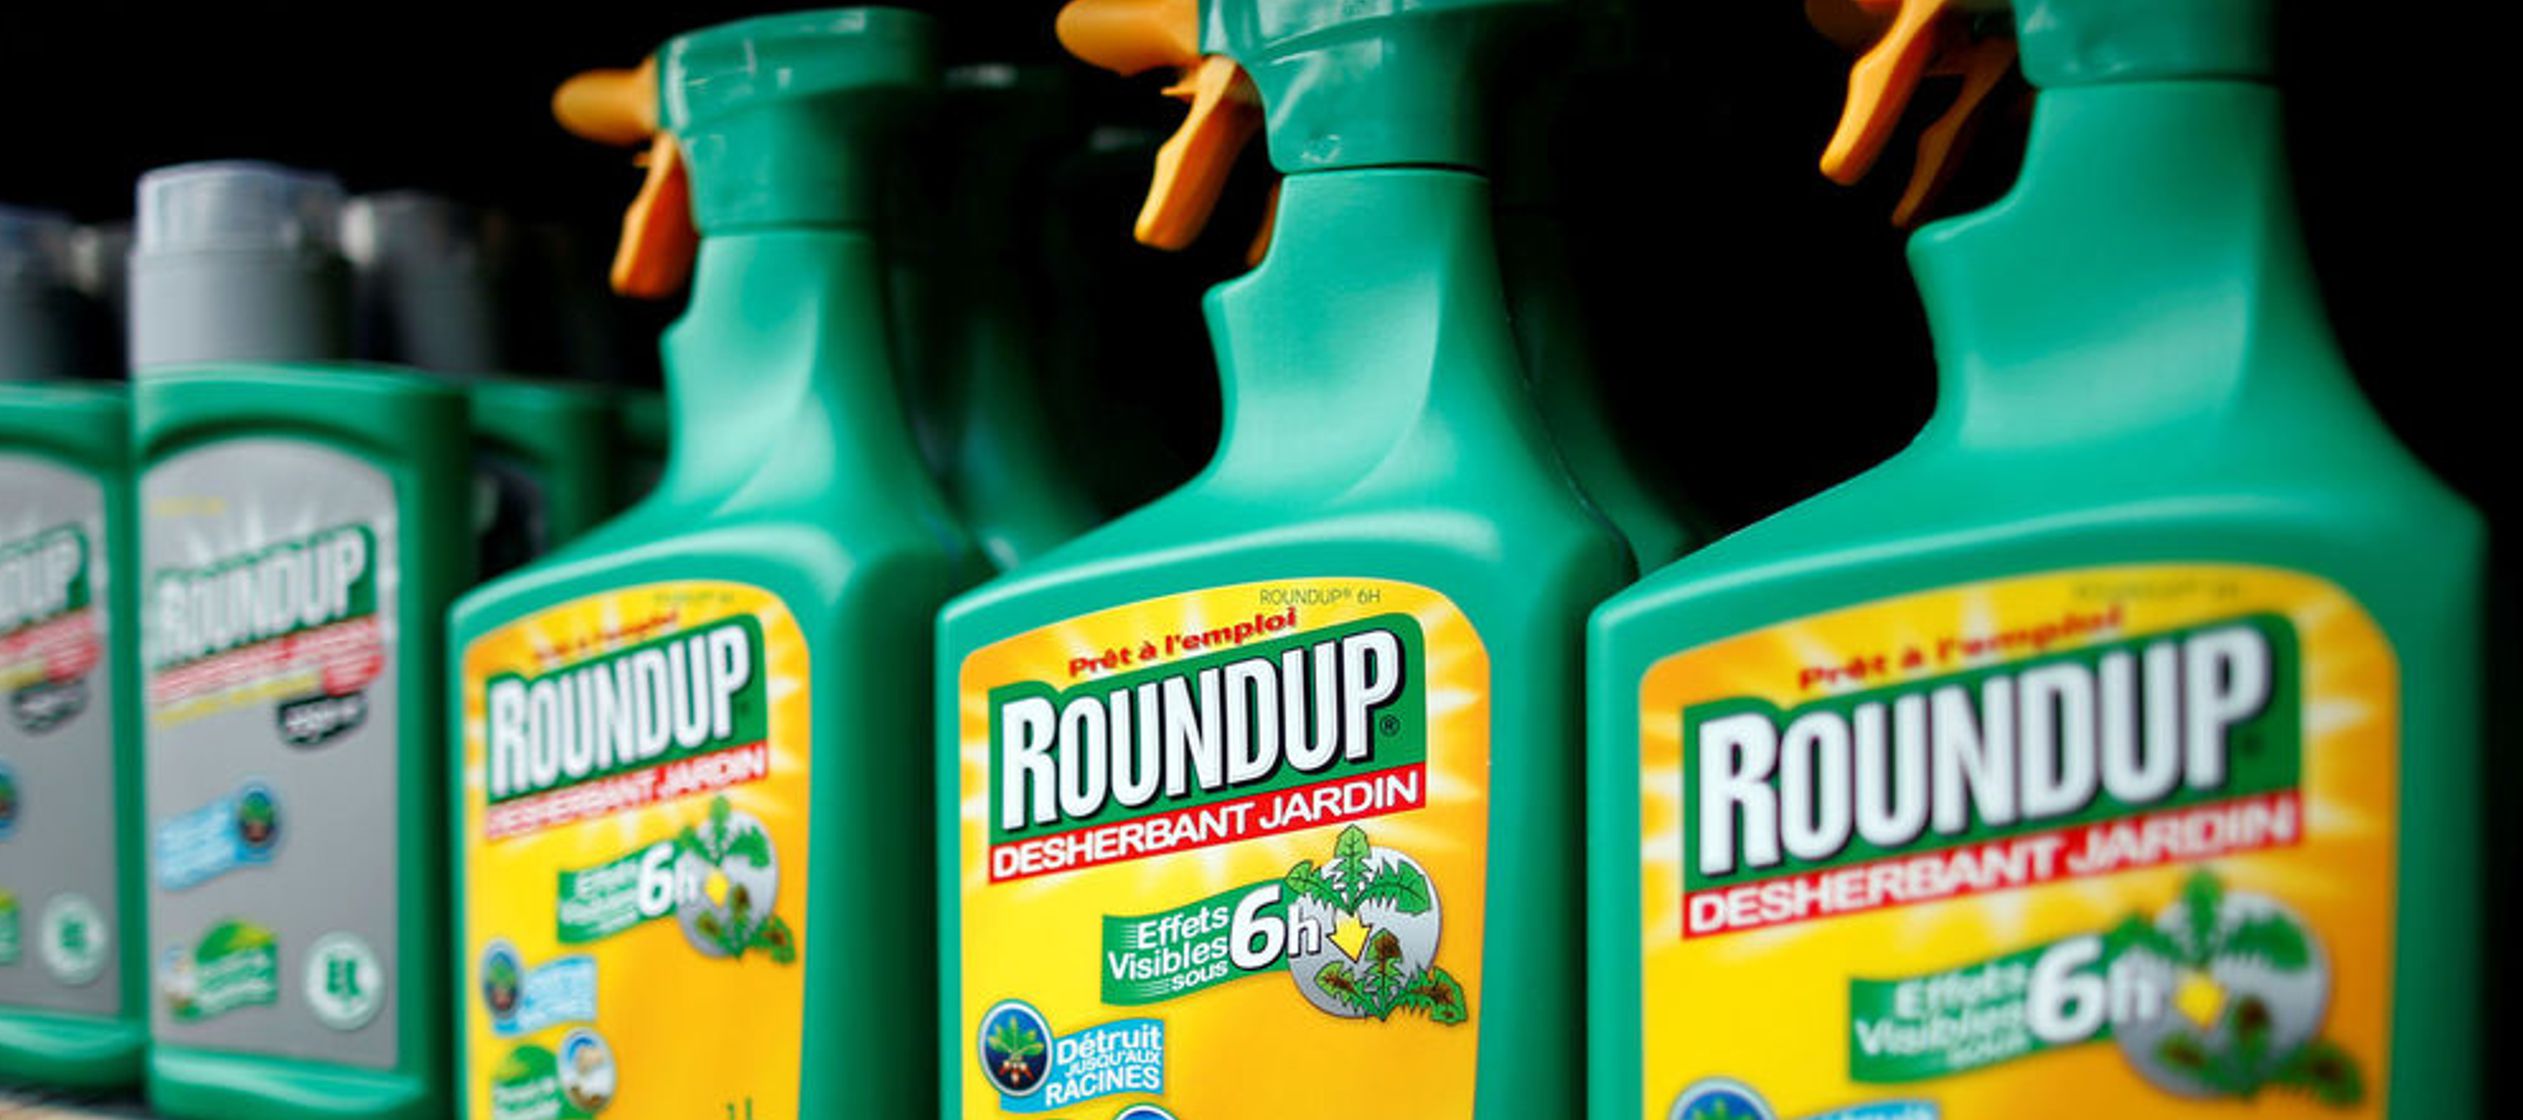 El hombre en cuestión, Dewayne Johnson, sostiene que utilizó el herbicida Roundup de...